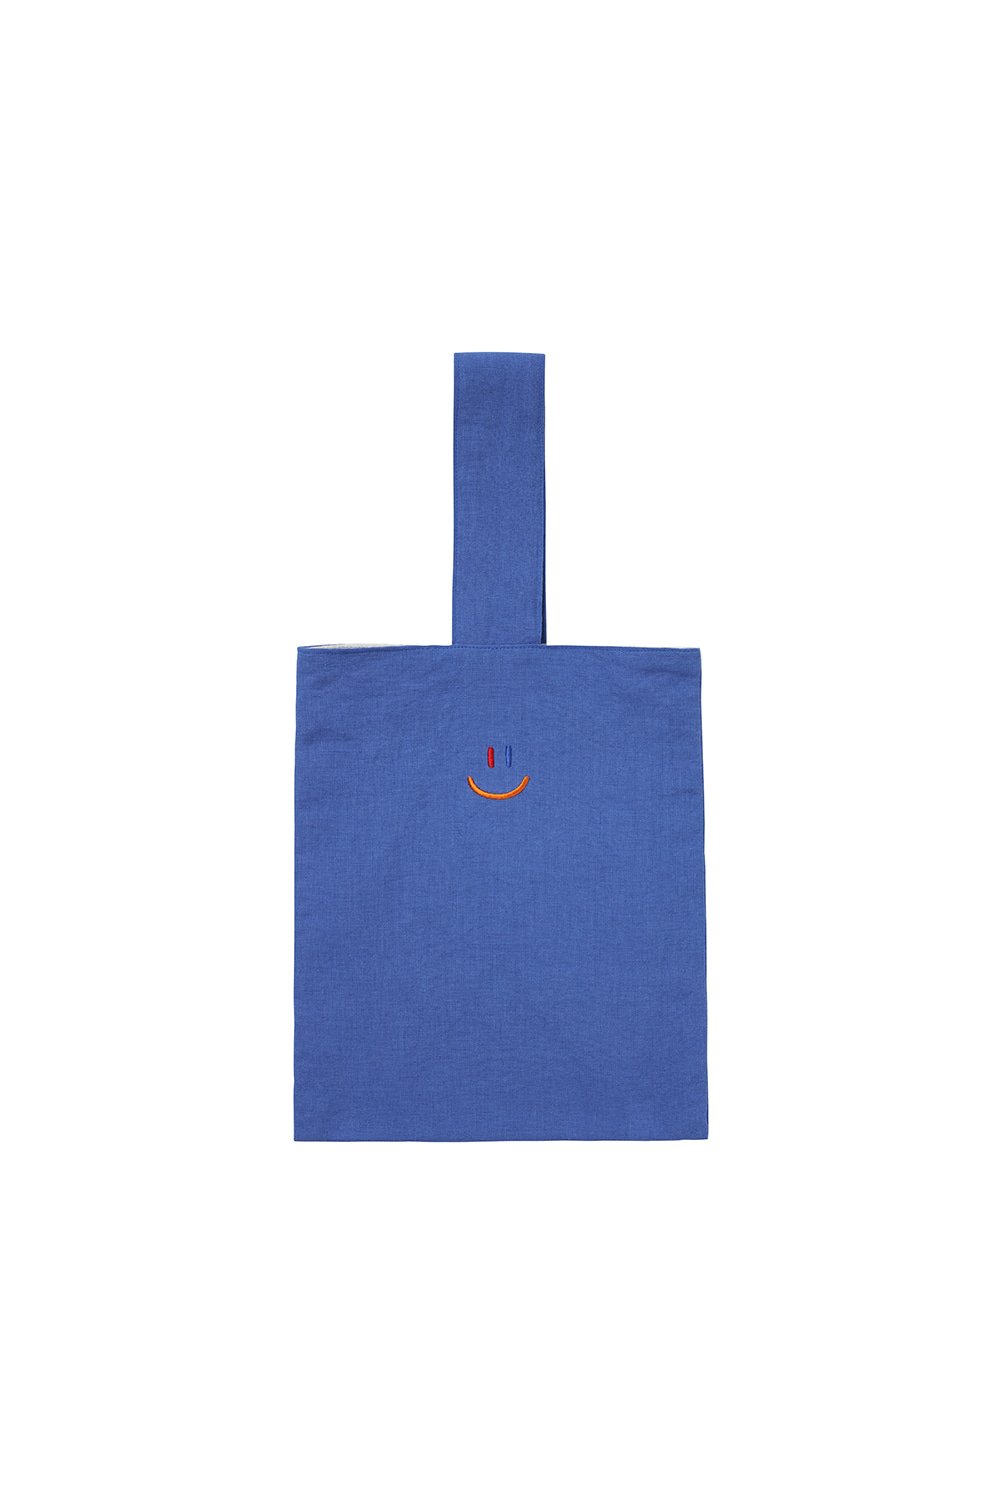 LaLa Eco Bag [Blue]